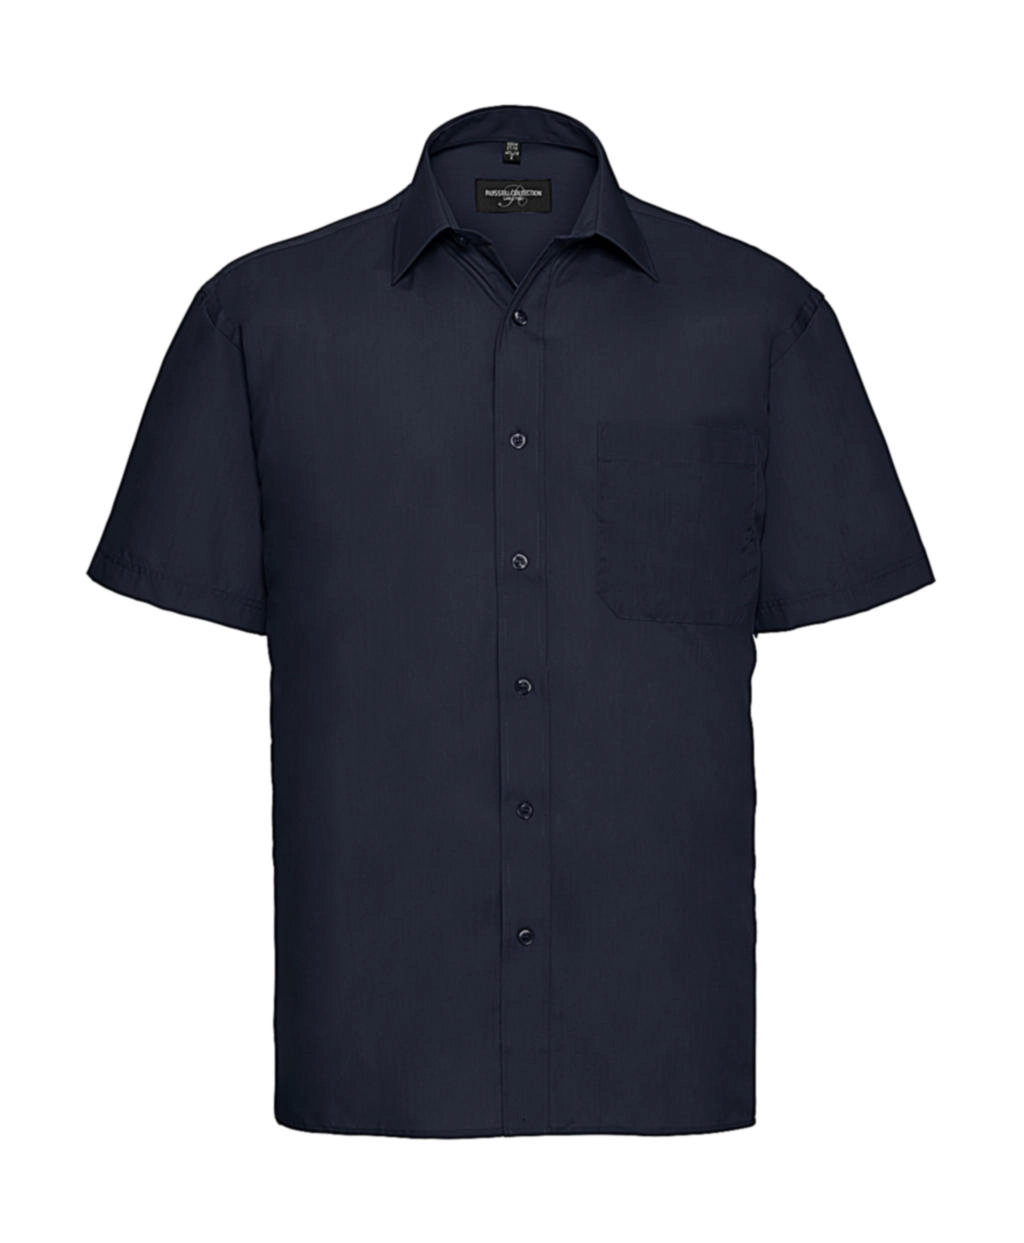 Poplin Shirt zum Besticken und Bedrucken in der Farbe French Navy mit Ihren Logo, Schriftzug oder Motiv.